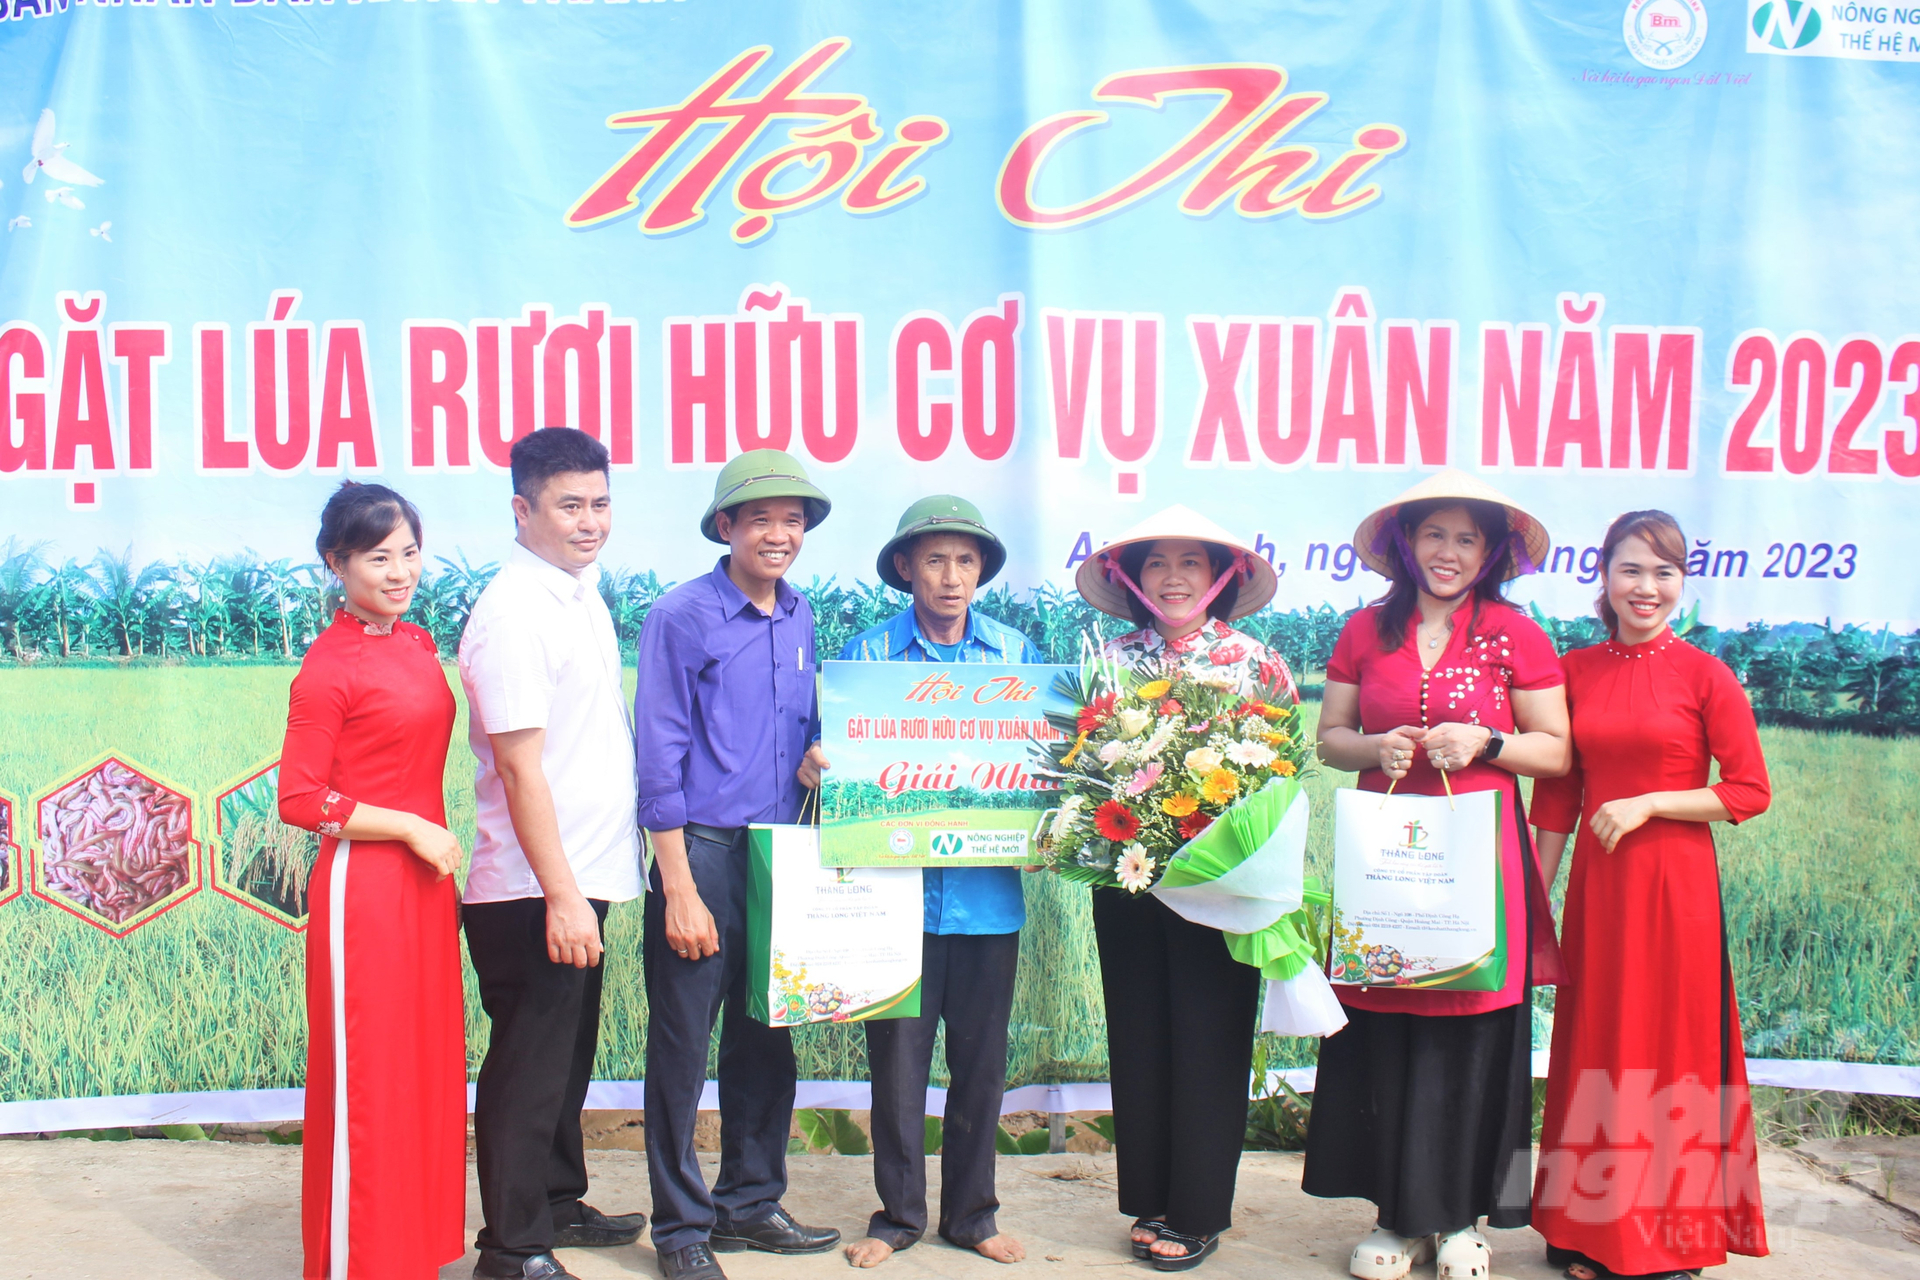 Bà Phạm Thị Đào, Phó Giám đốc Sở NN-PTNT Hải Dương (thứ 3 từ phải sang) cùng đại diện các doanh nghiệp liên kết, thu mua lúa hữu cơ canh tác tại ruộng rươi trao giải thưởng cho các đội thi.